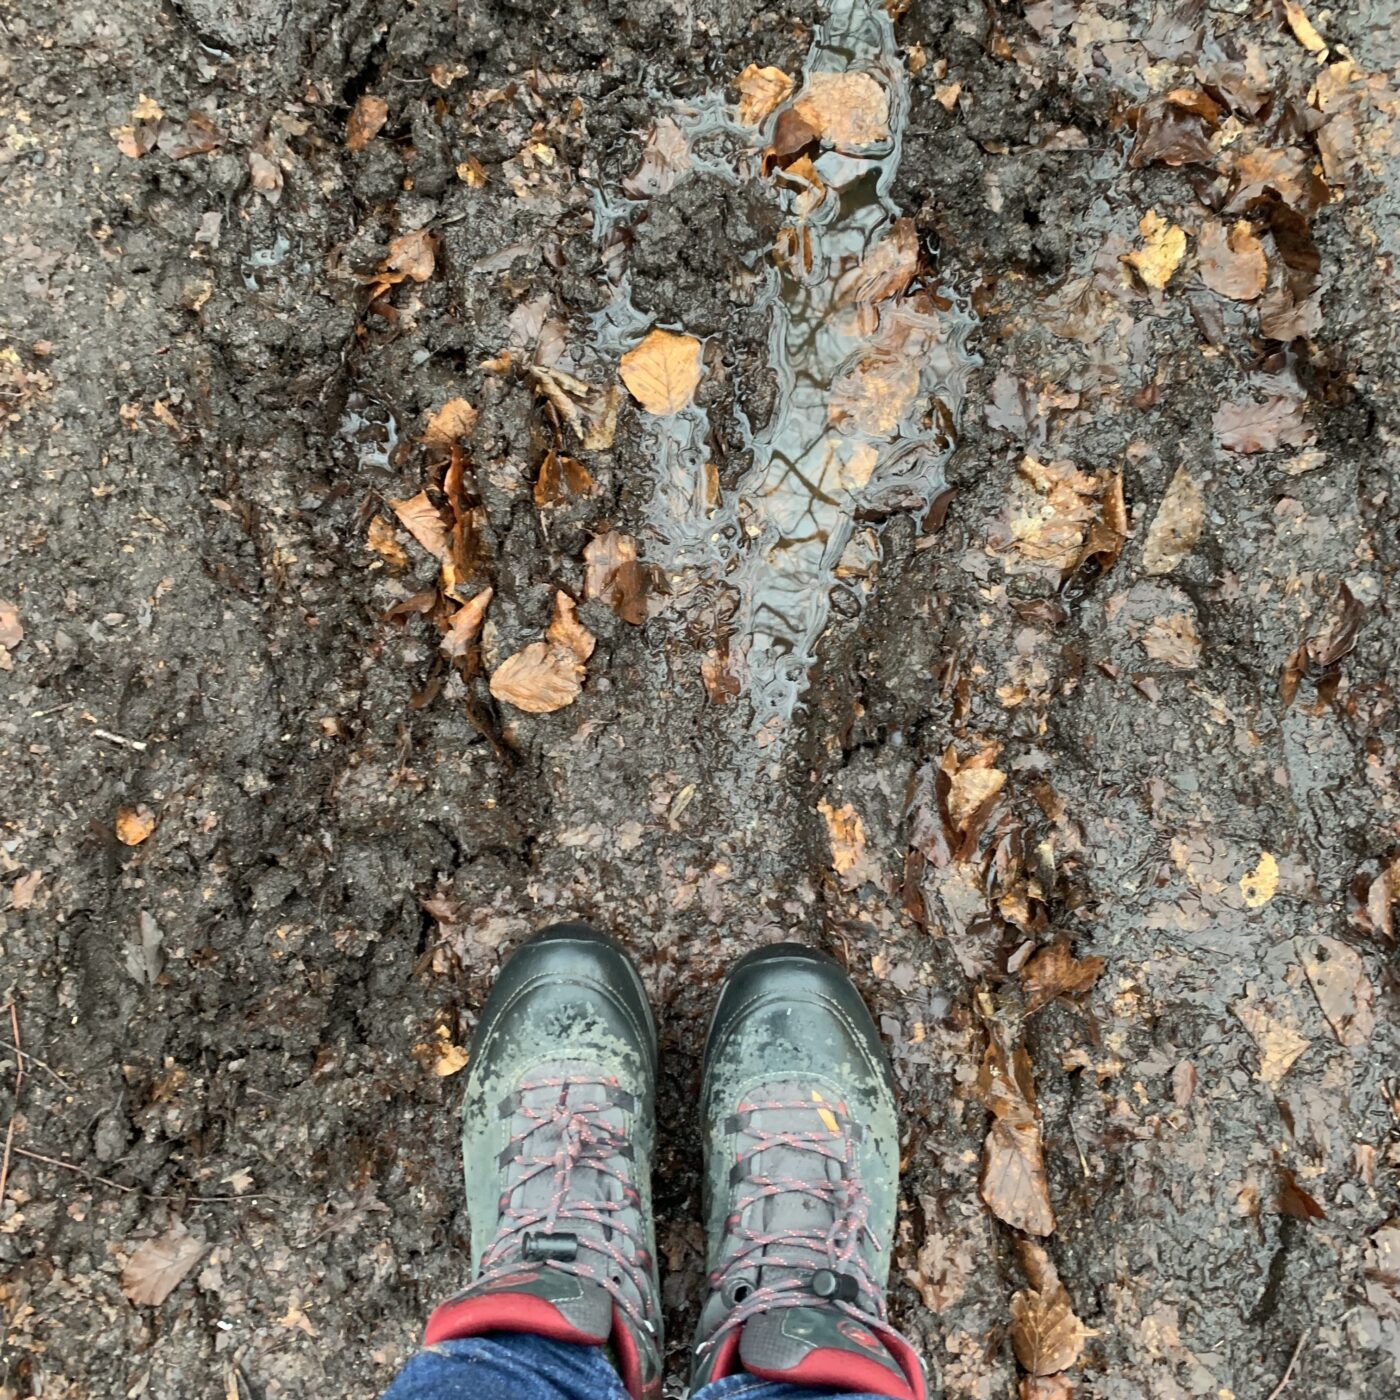 Et par fødder i vandrestøvler på en meget våd og mudret sti med visne blade.